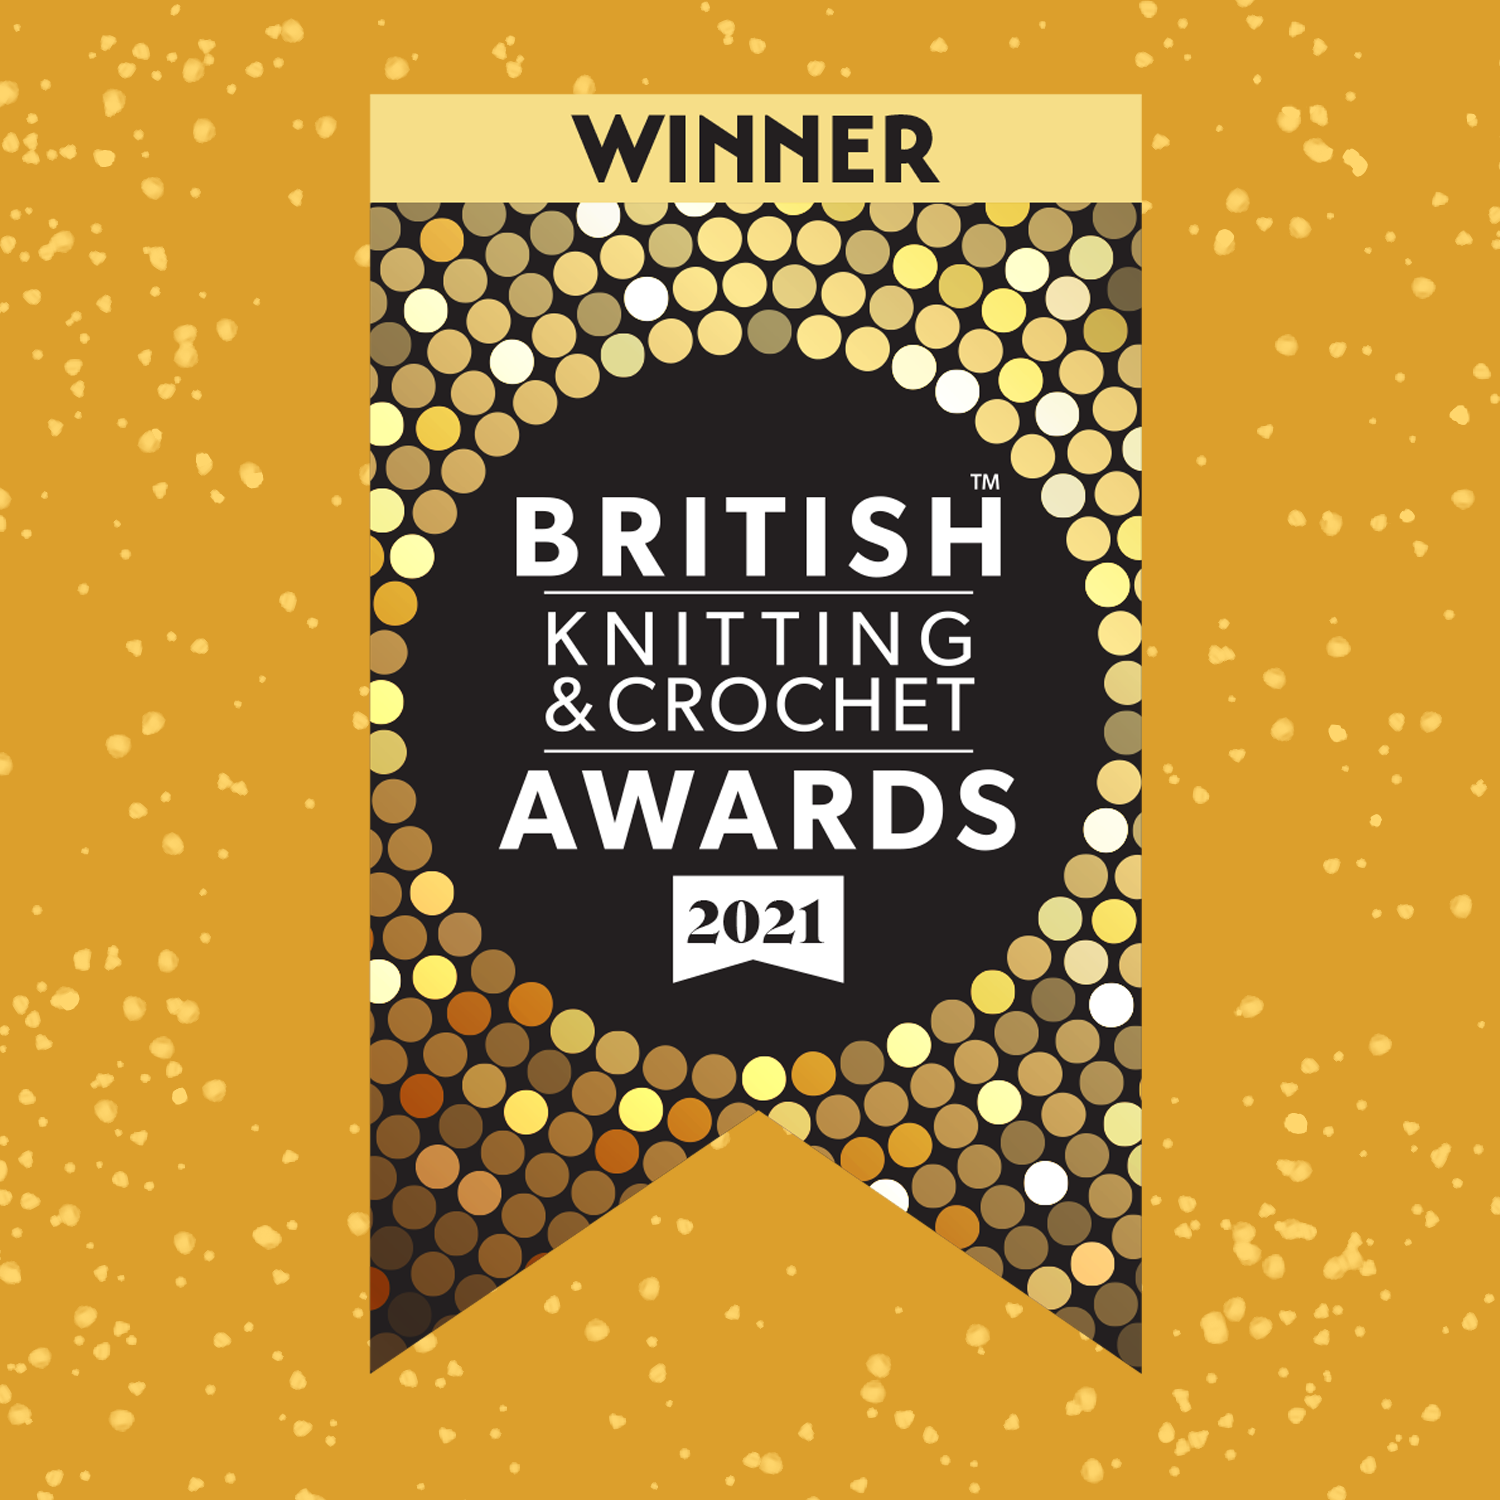 Winners in the British Knitting & Crochet Awards 2021